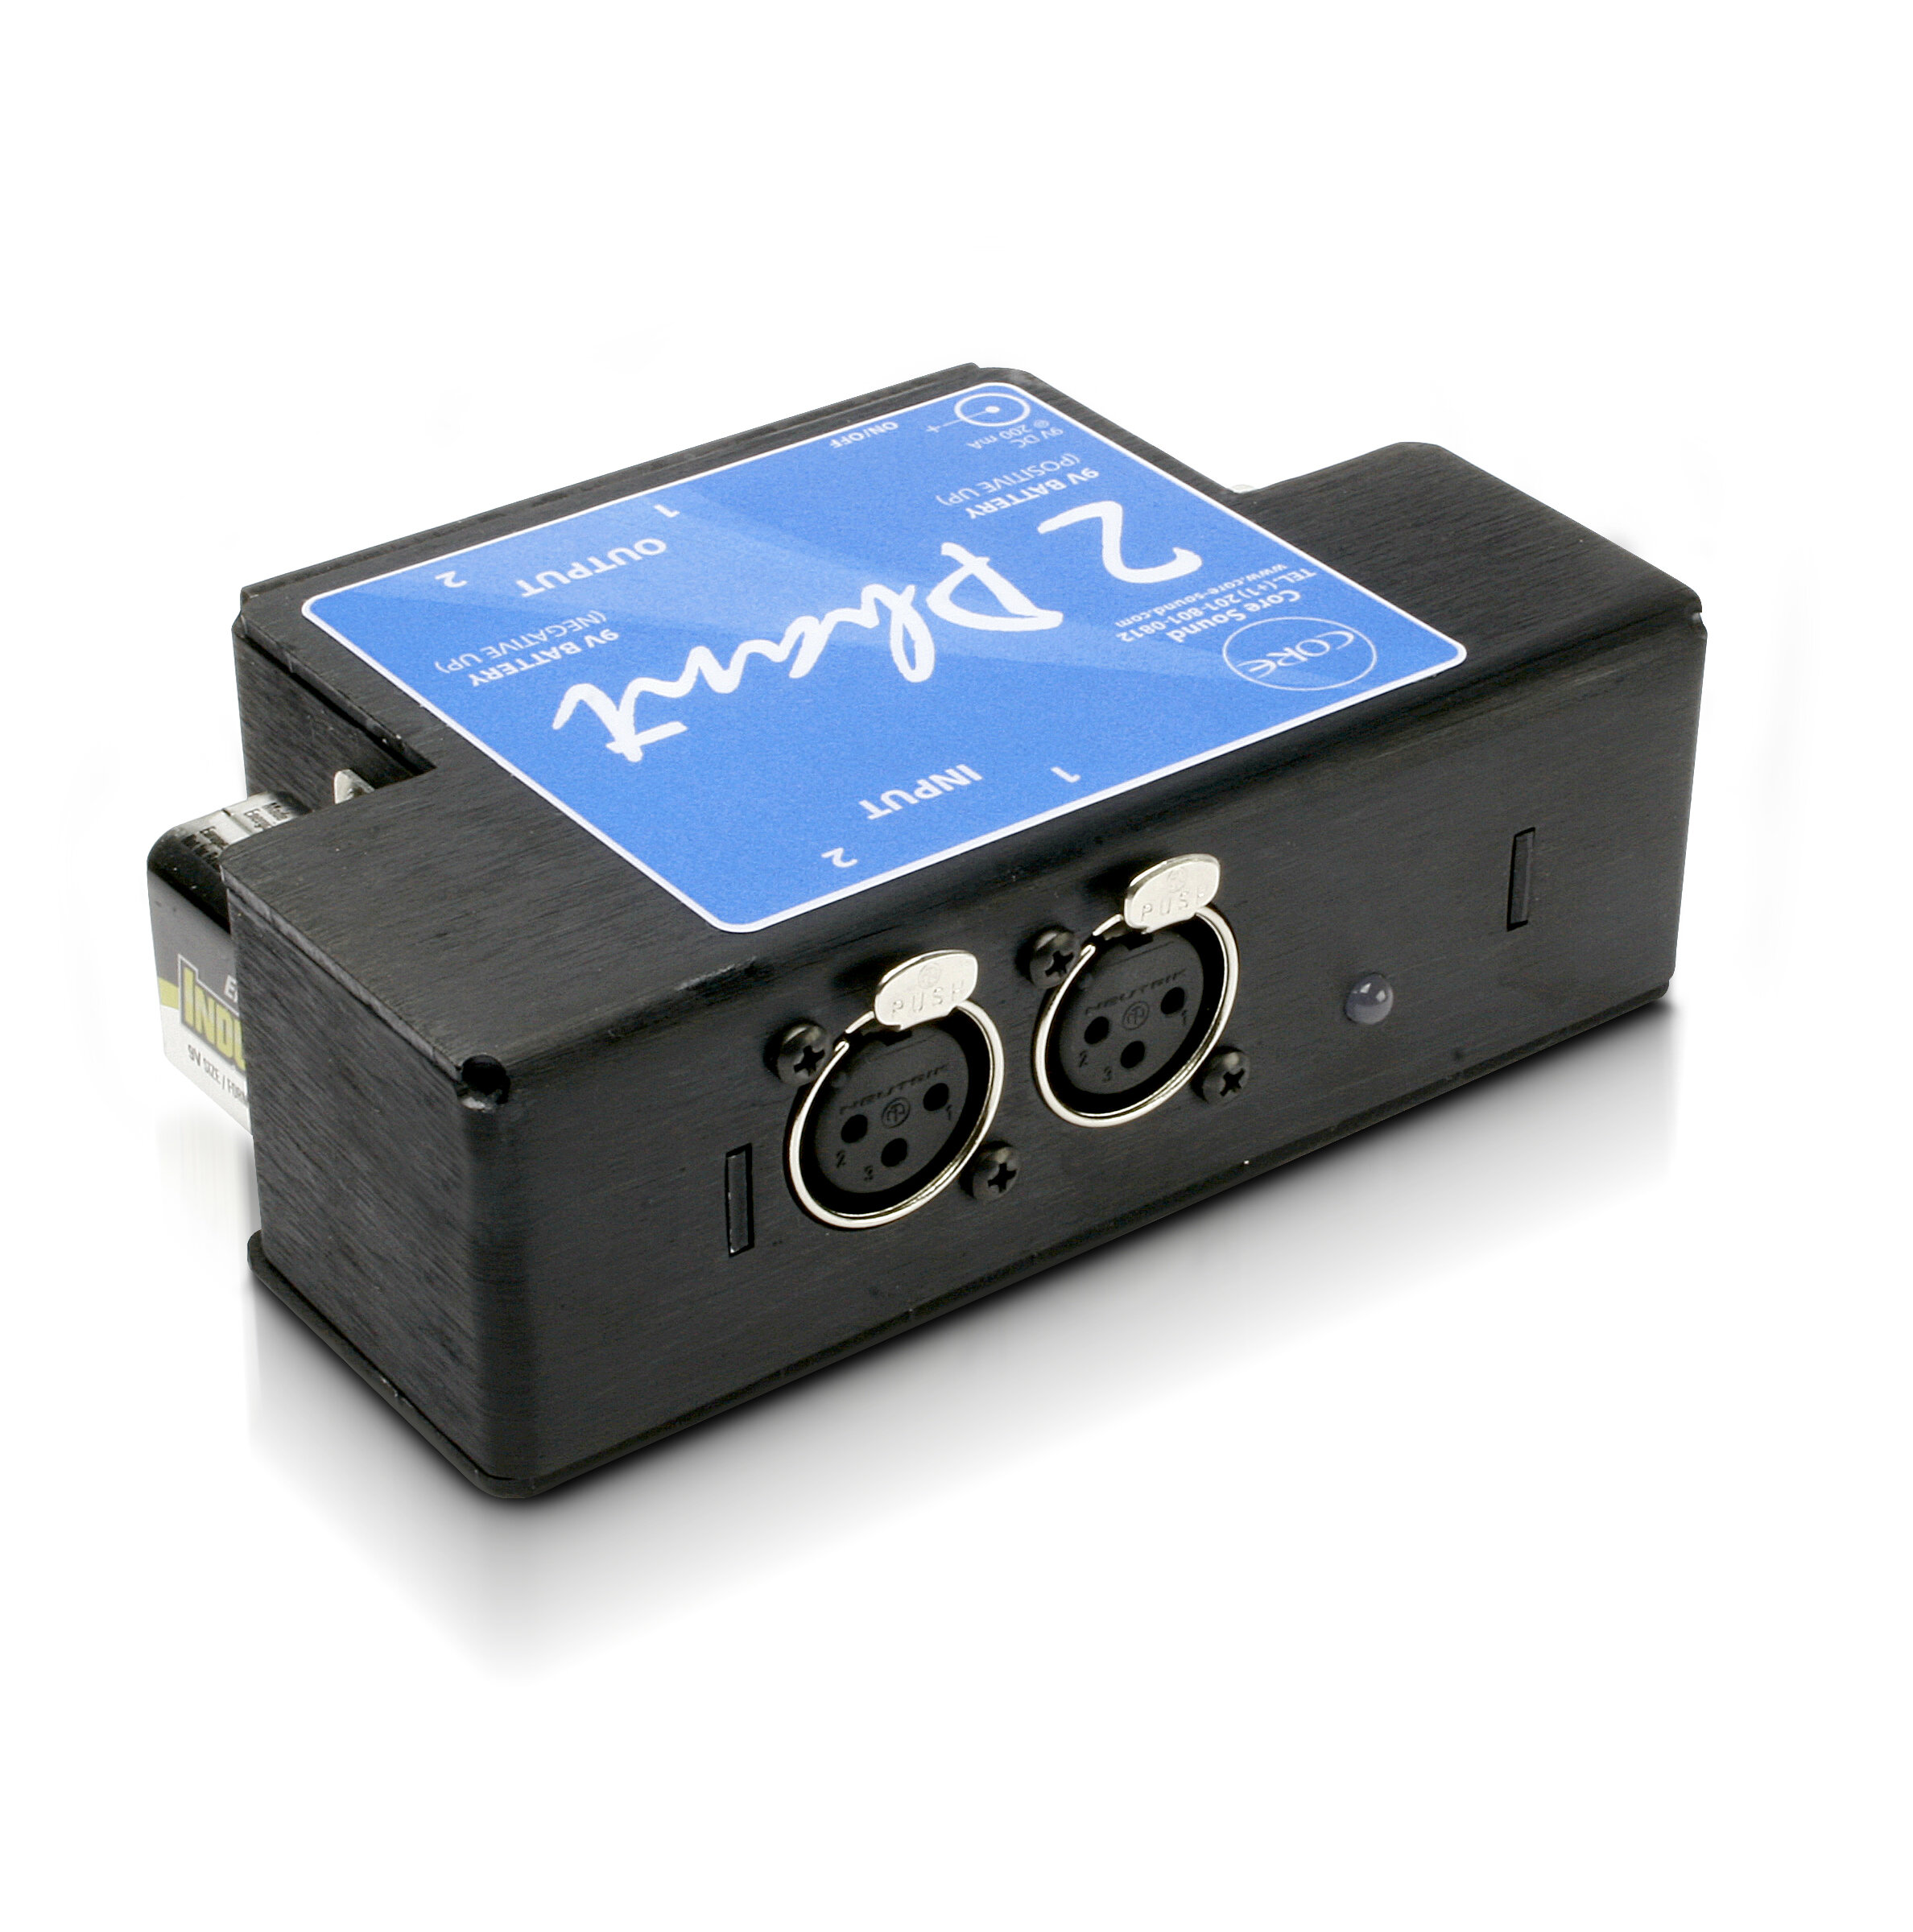 Sound 2Phant™ Portable Dual Phantom Power Supply — Core Sound